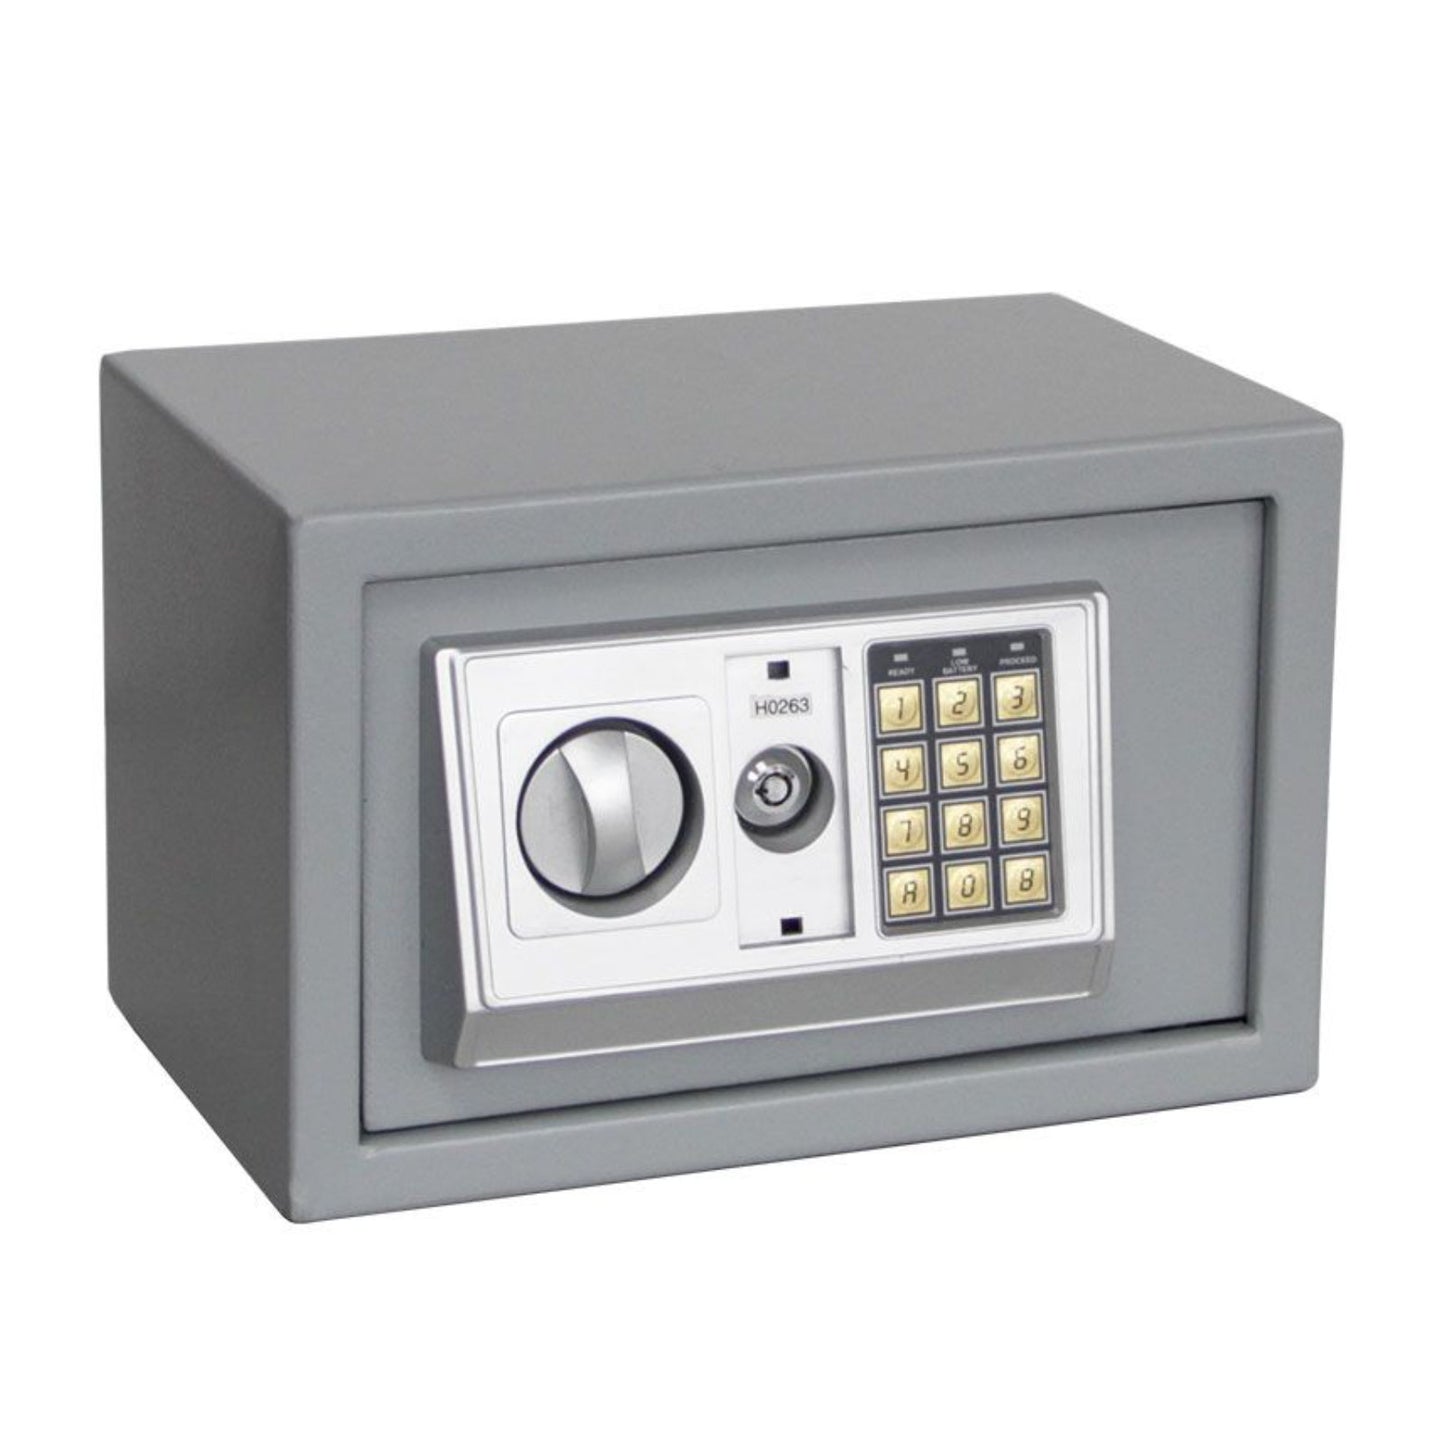 Tresor "Mini" in Grau mit Schlüssel, Zahlenschloss oder Fingerabdruck, 310 mm x 200 mm x 200 mm